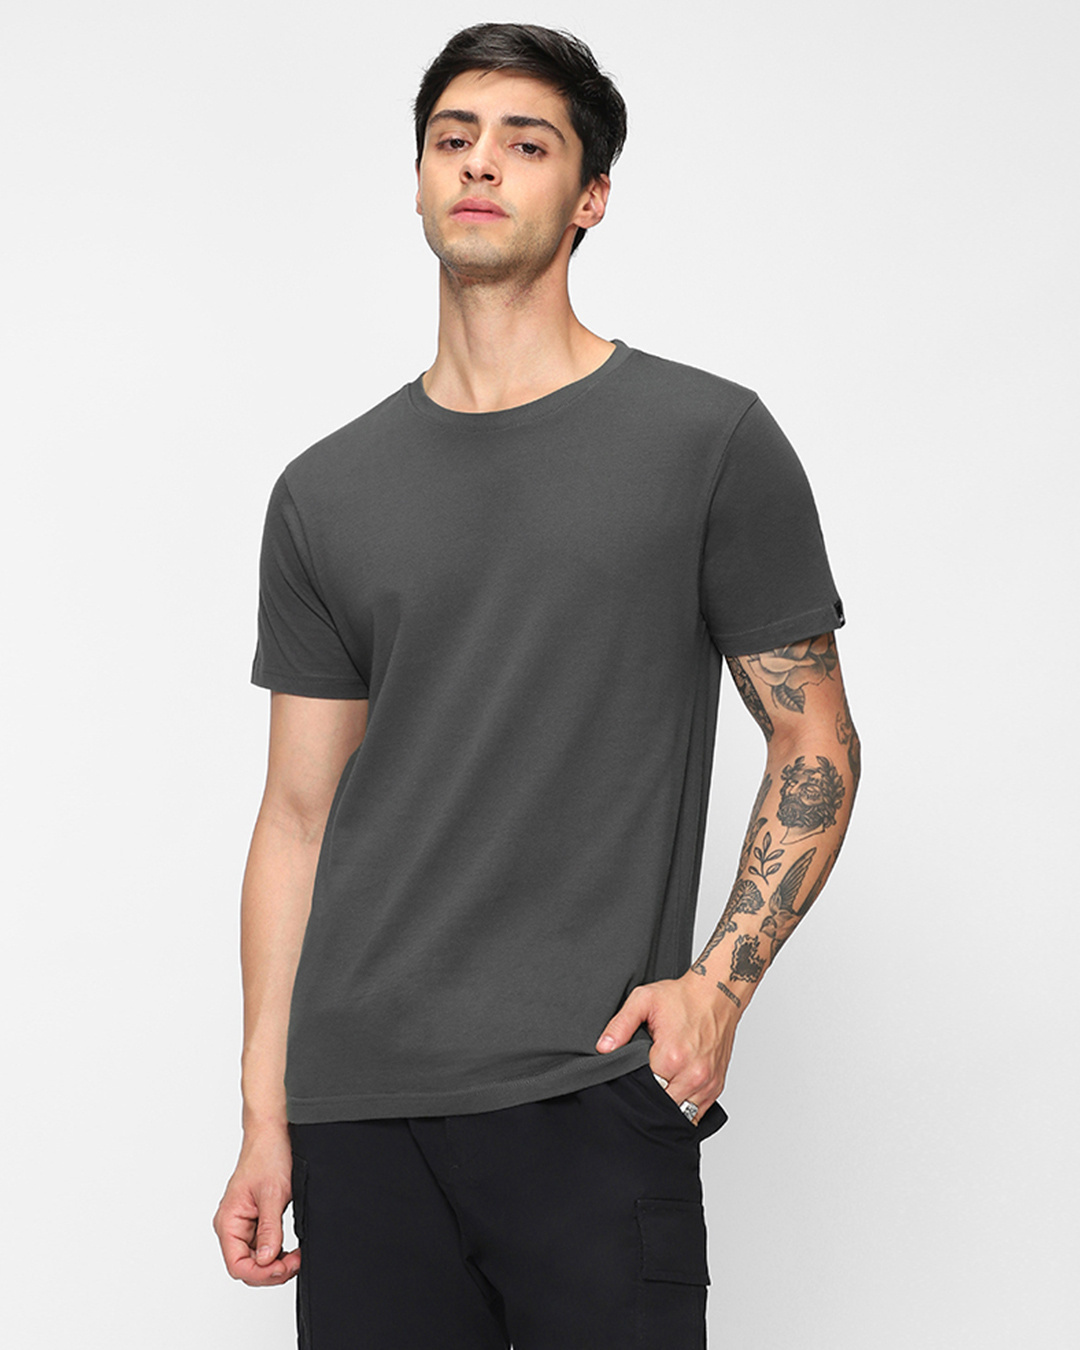 Buy Men's Grey T-shirt Online at Bewakoof